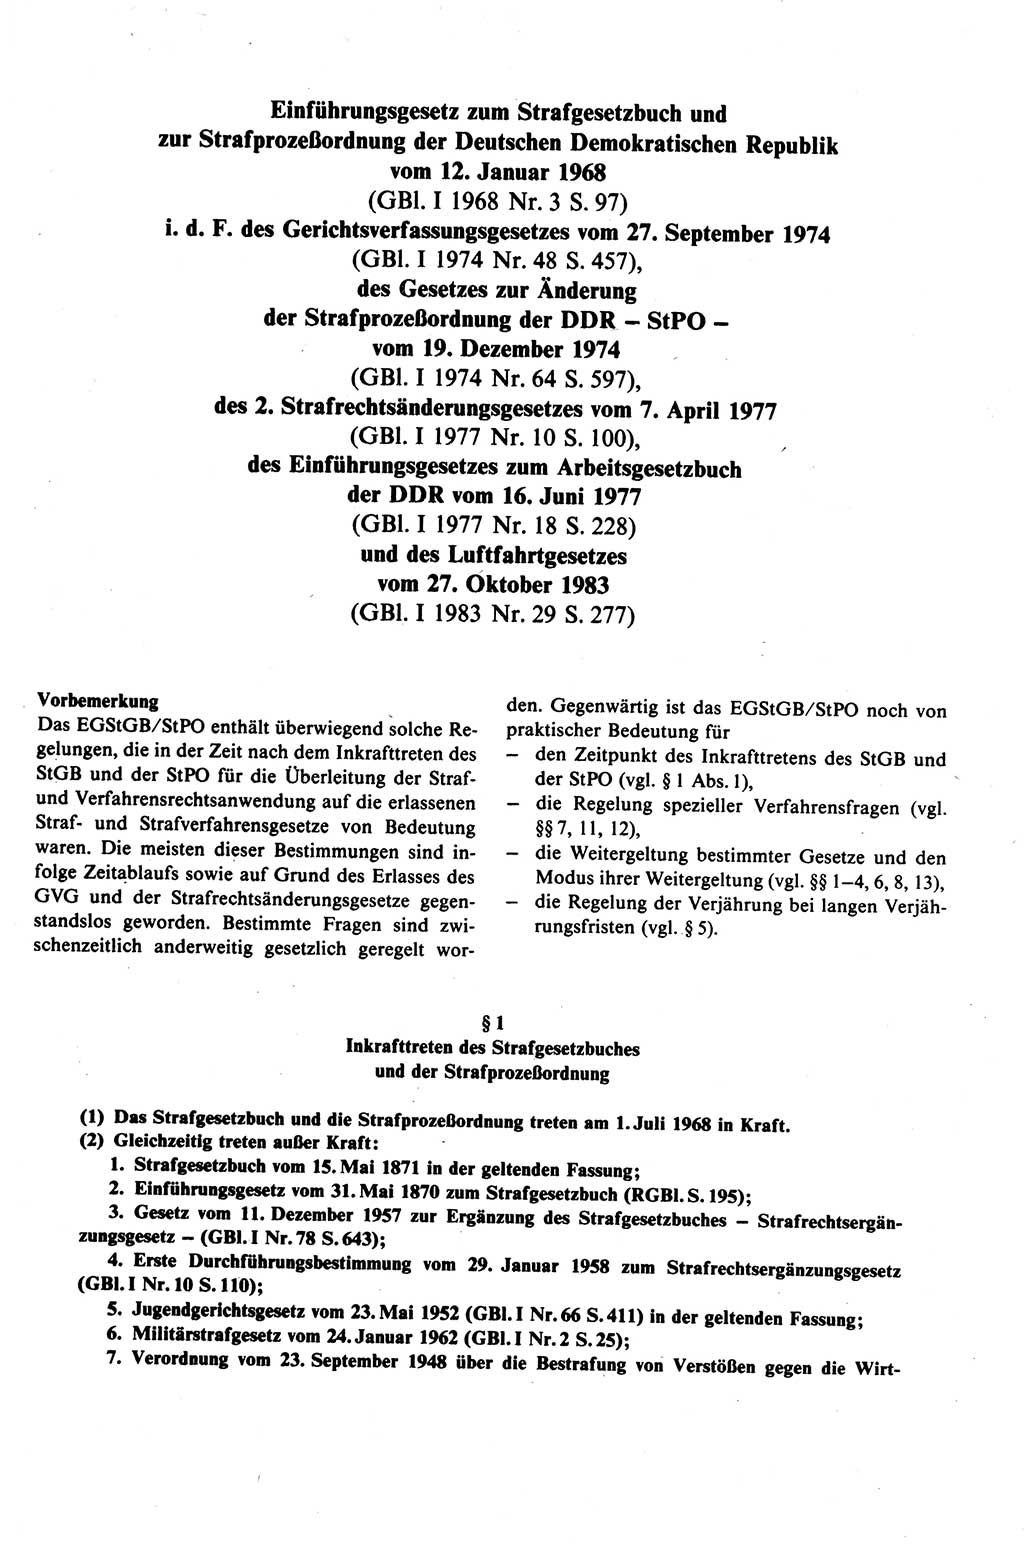 Strafprozeßrecht der DDR (Deutsche Demokratische Republik), Kommentar zur Strafprozeßordnung (StPO) 1989, Seite 493 (Strafprozeßr. DDR Komm. StPO 1989, S. 493)